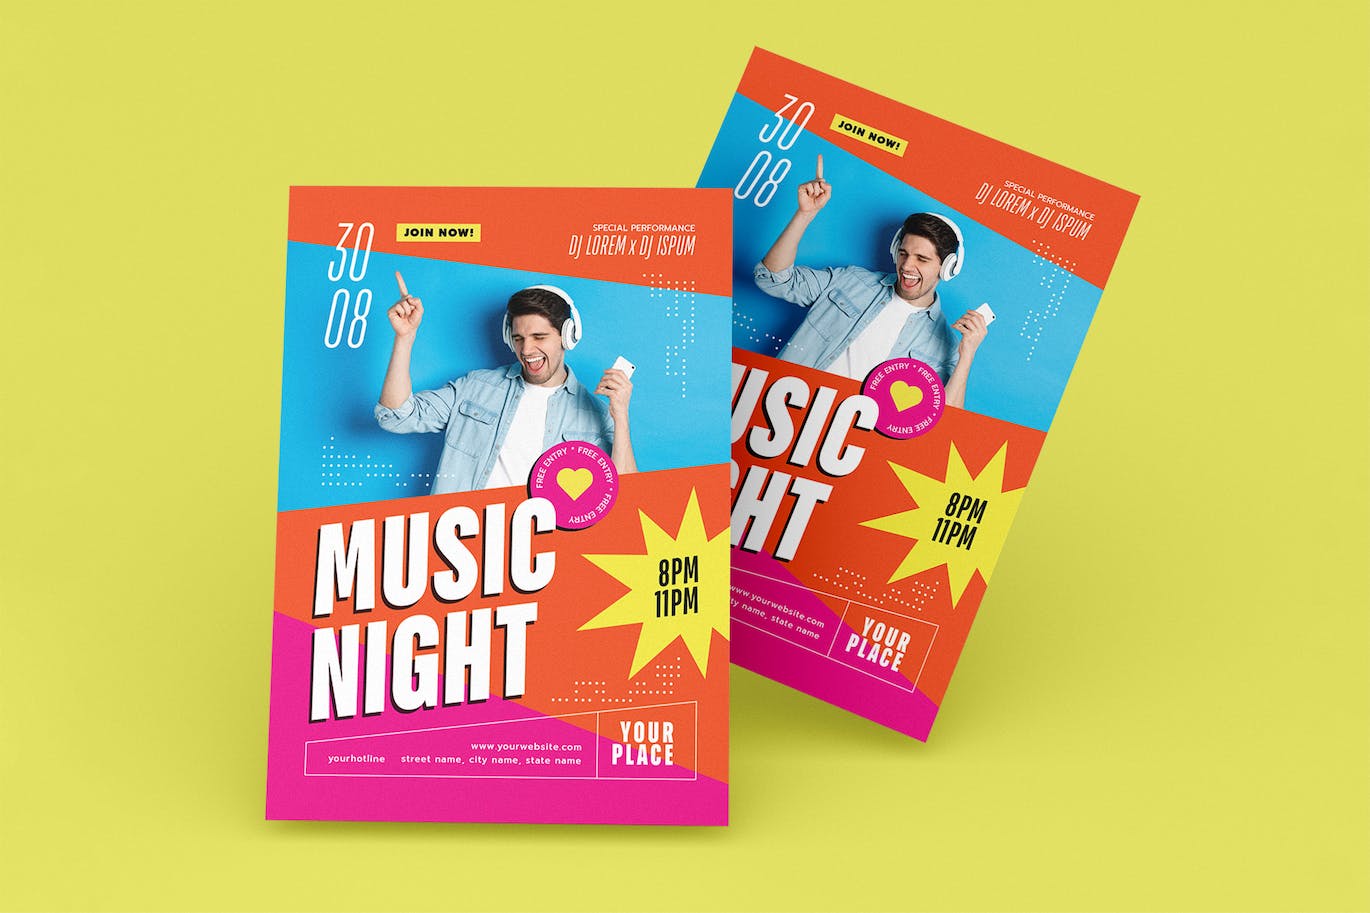 音乐之夜派对传单设计模板 Music Night Party Flyer